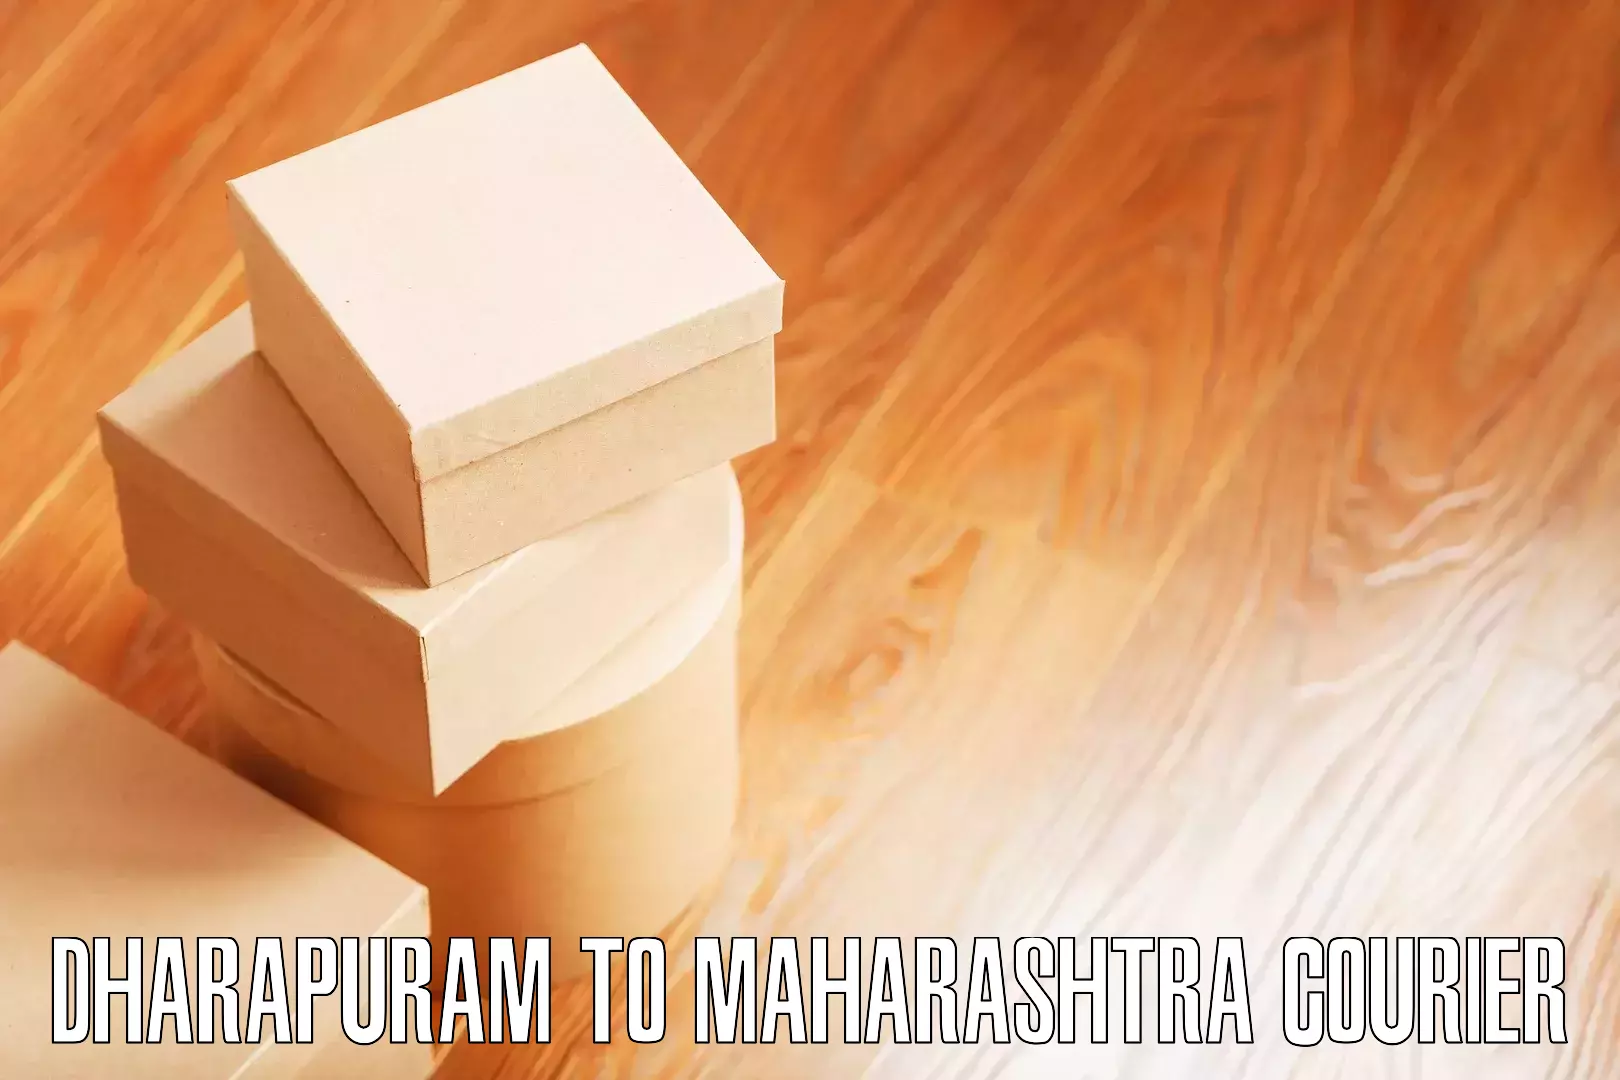 Furniture movers and packers Dharapuram to Igatpuri